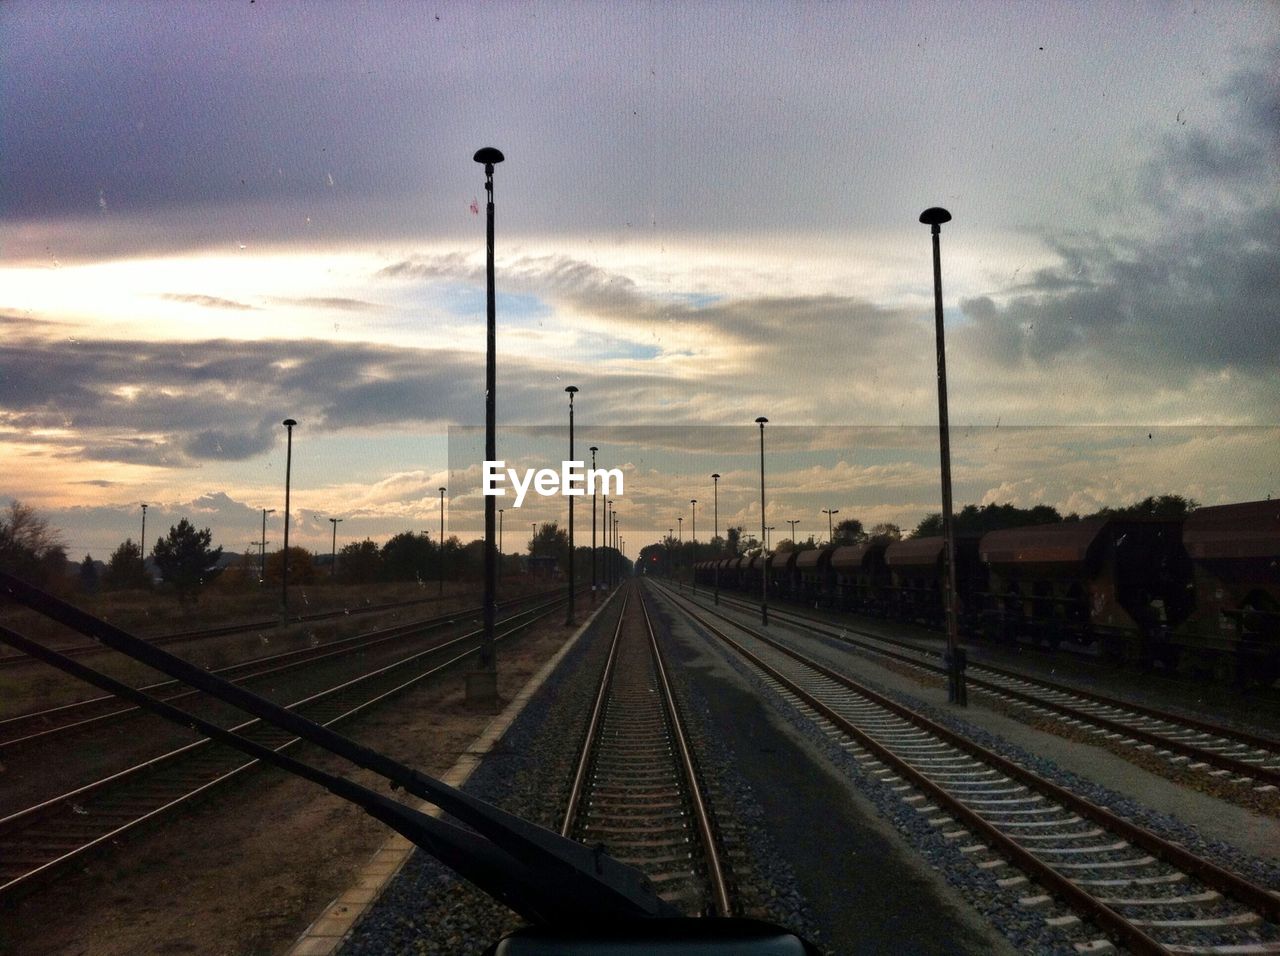 Railroad track seen through train